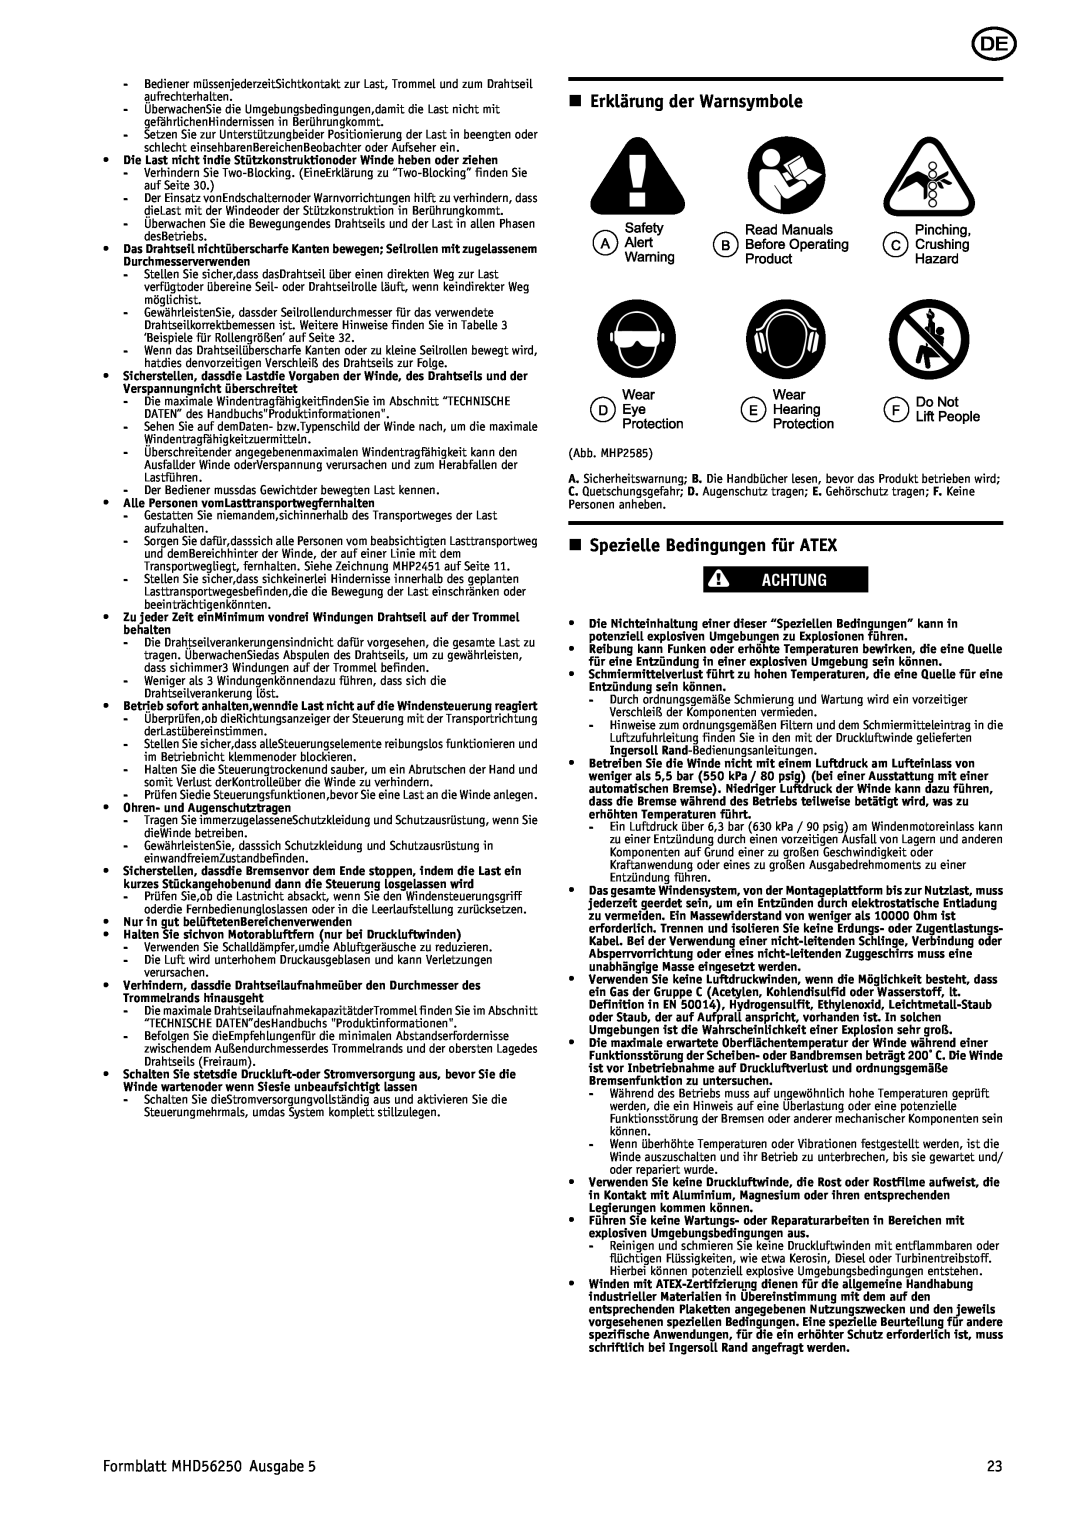 Ingersoll-Rand manual n Erklärung der Warnsymbole, n Spezielle Bedingungen für ATEX, Achtung, Formblatt MHD56250 Ausgabe 